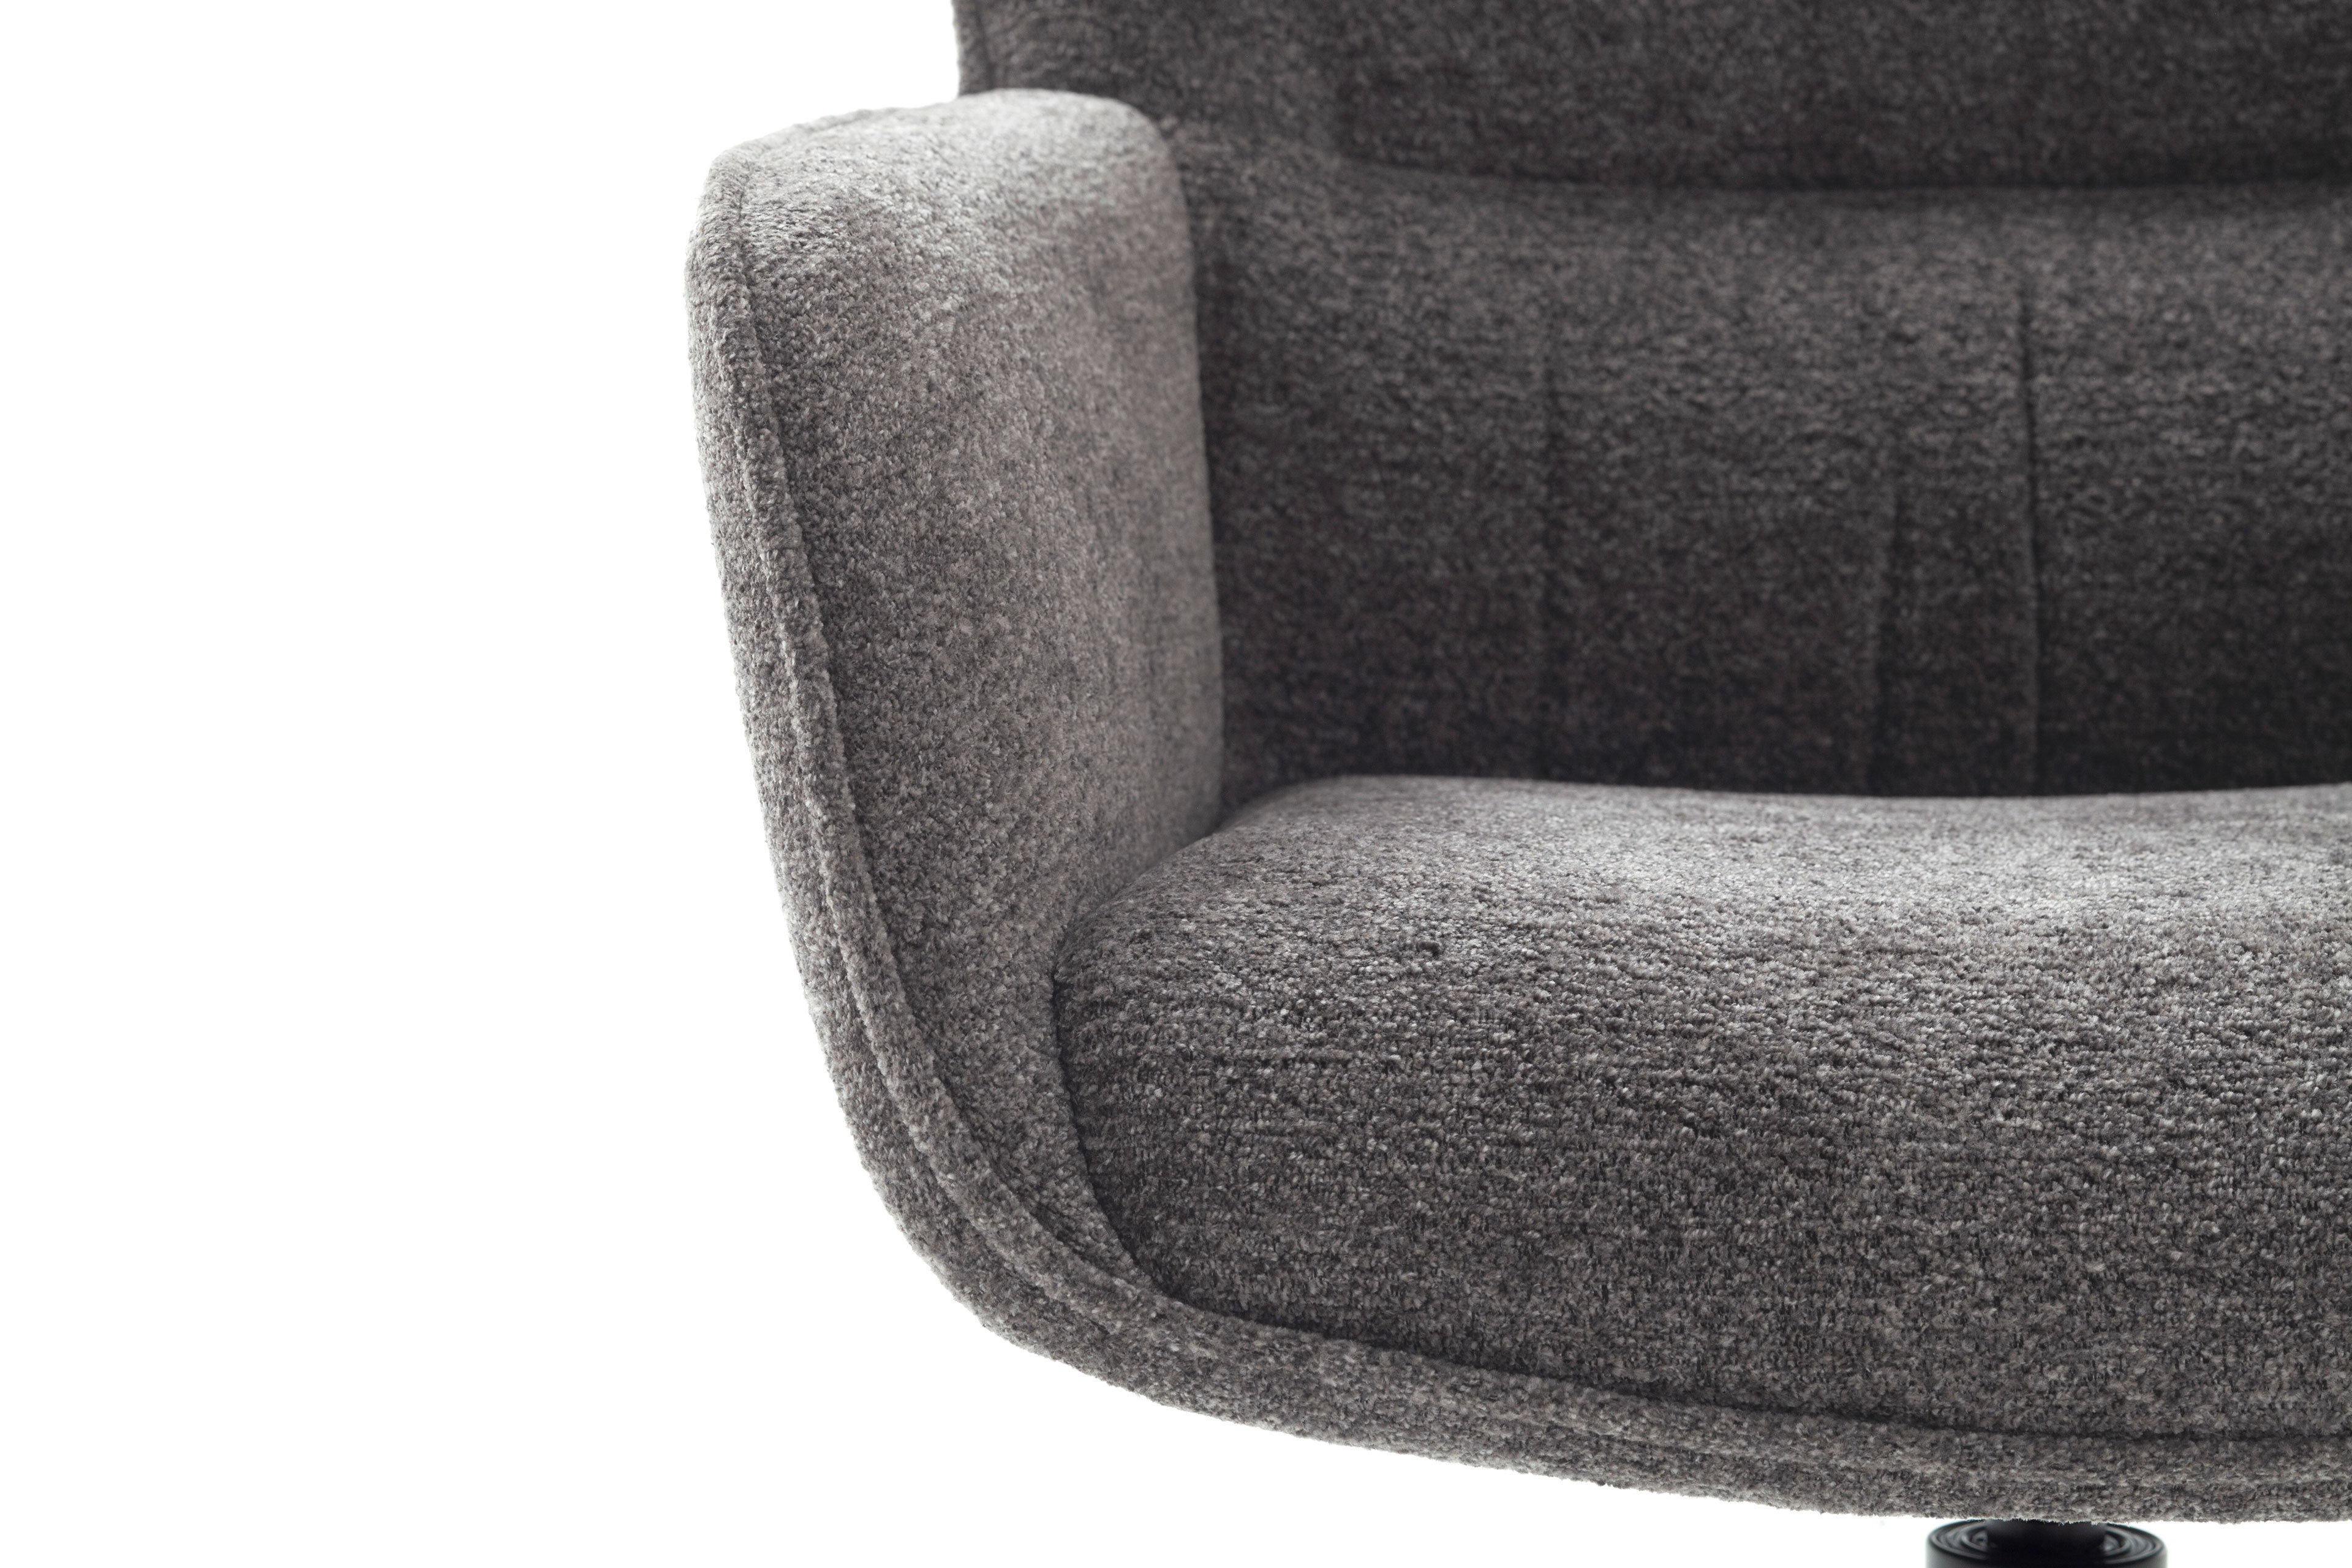 MCA furniture Stuhl Limone 1 mit ovalem Gestell | Möbel Letz - Ihr  Online-Shop